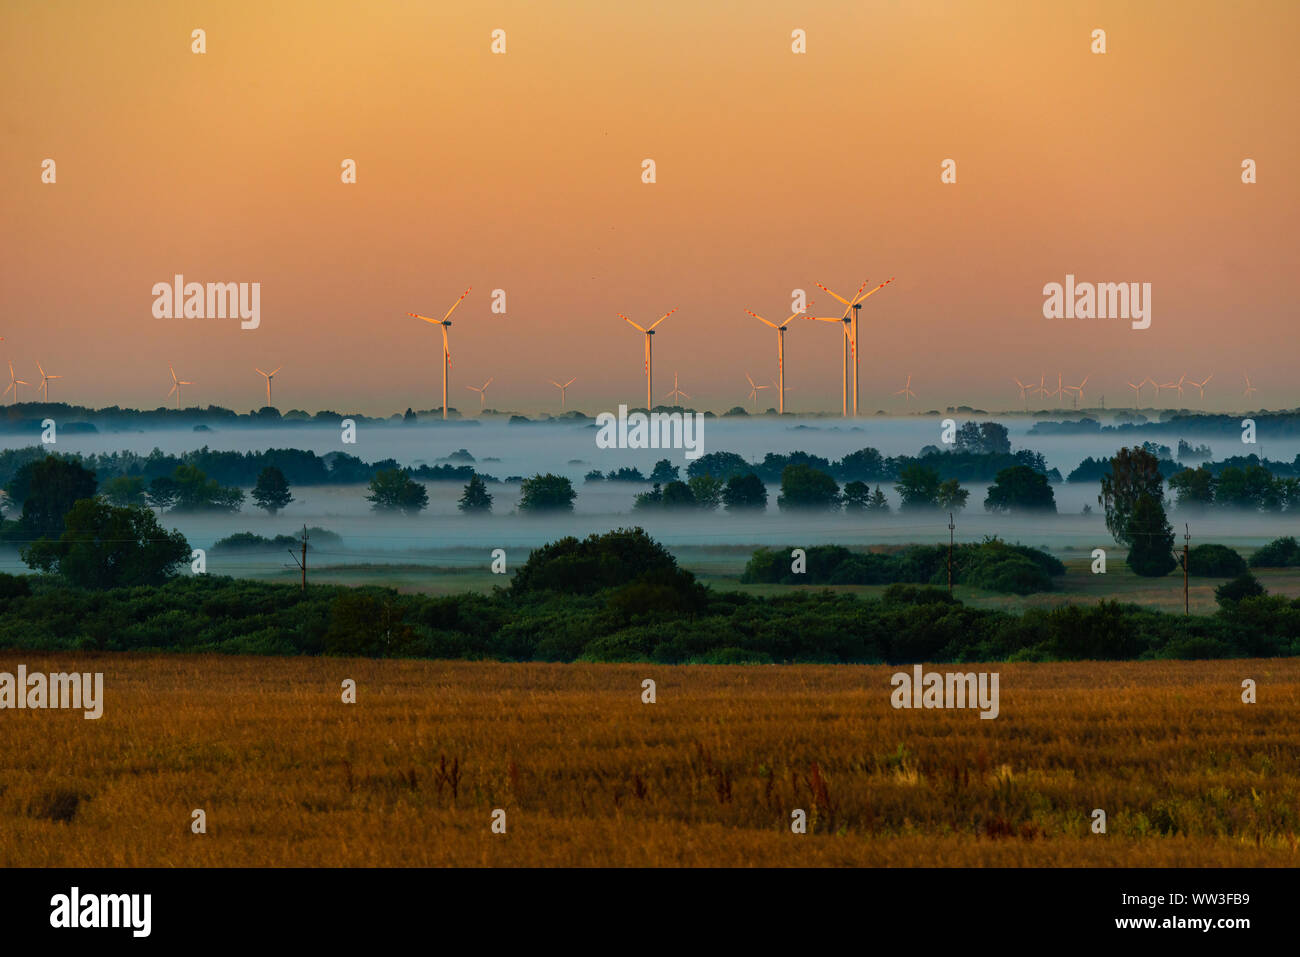 many wind turbines. Foggy morning Stock Photo